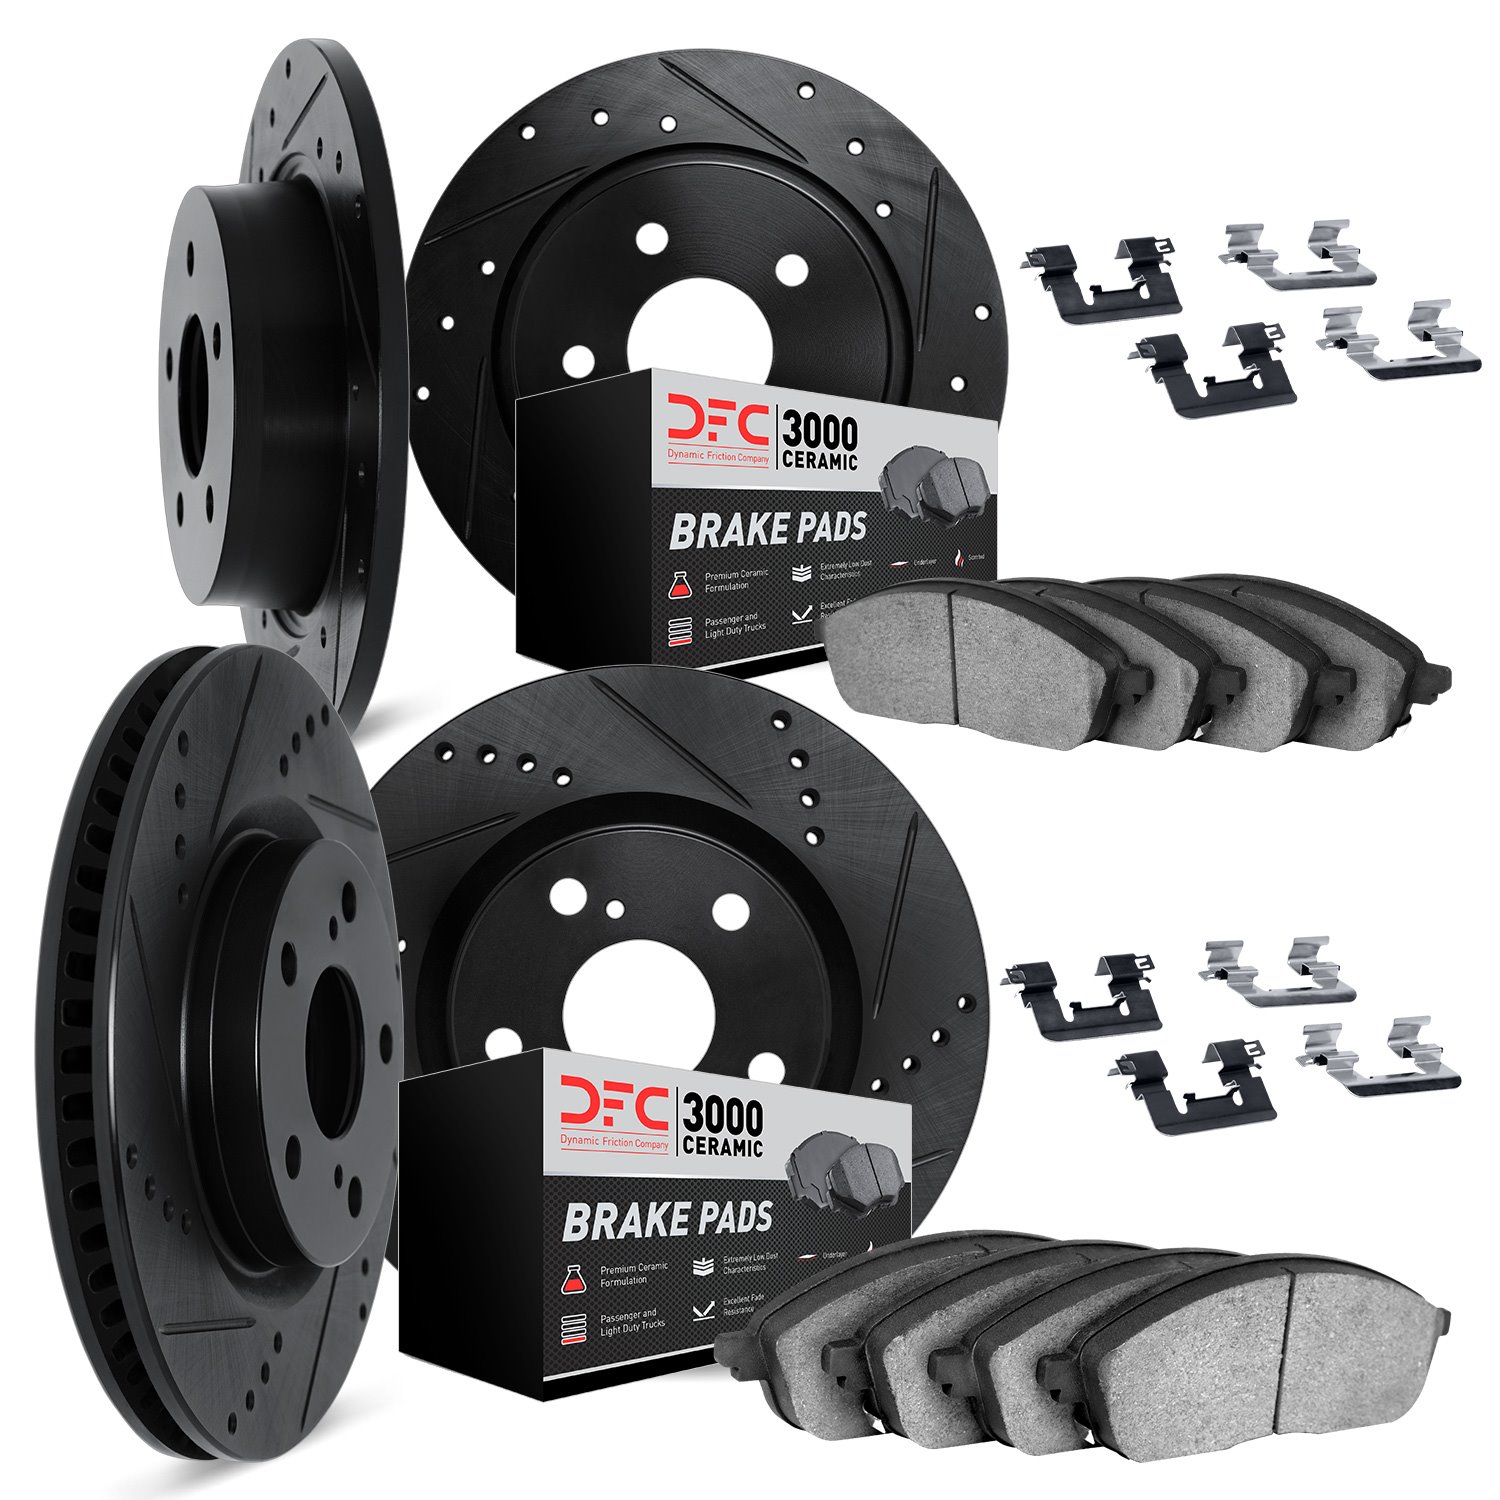 8314-76096 Drilled/Slotted Brake Rotors with 3000-Series Ceramic Brake Pads Kit & Hardware [Black], 2009-2015 Lexus/Toyota/Scion